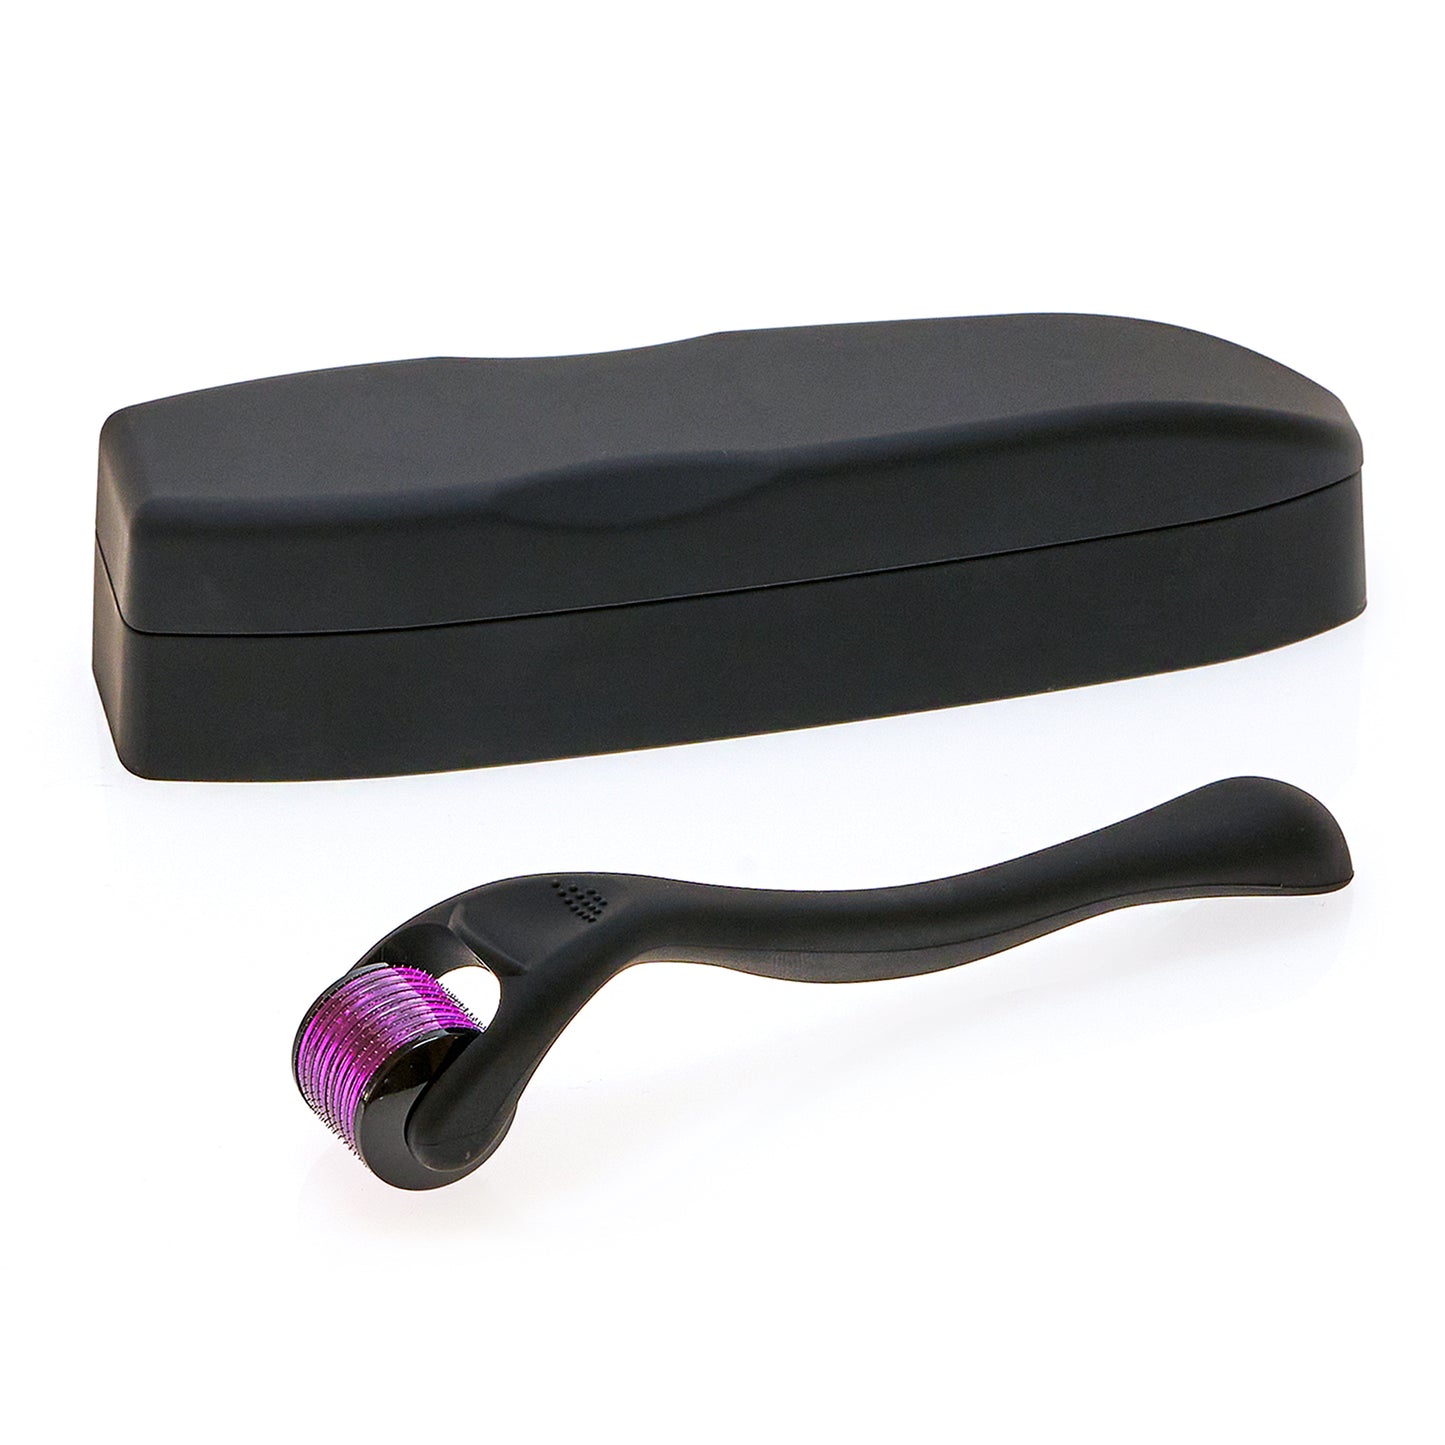 0,2mm Beauty Roller / Microneedling Dermaroller online kaufen. Im Hintergrunddie schwarze Aufbewahrungsbox für den Dermaroller.